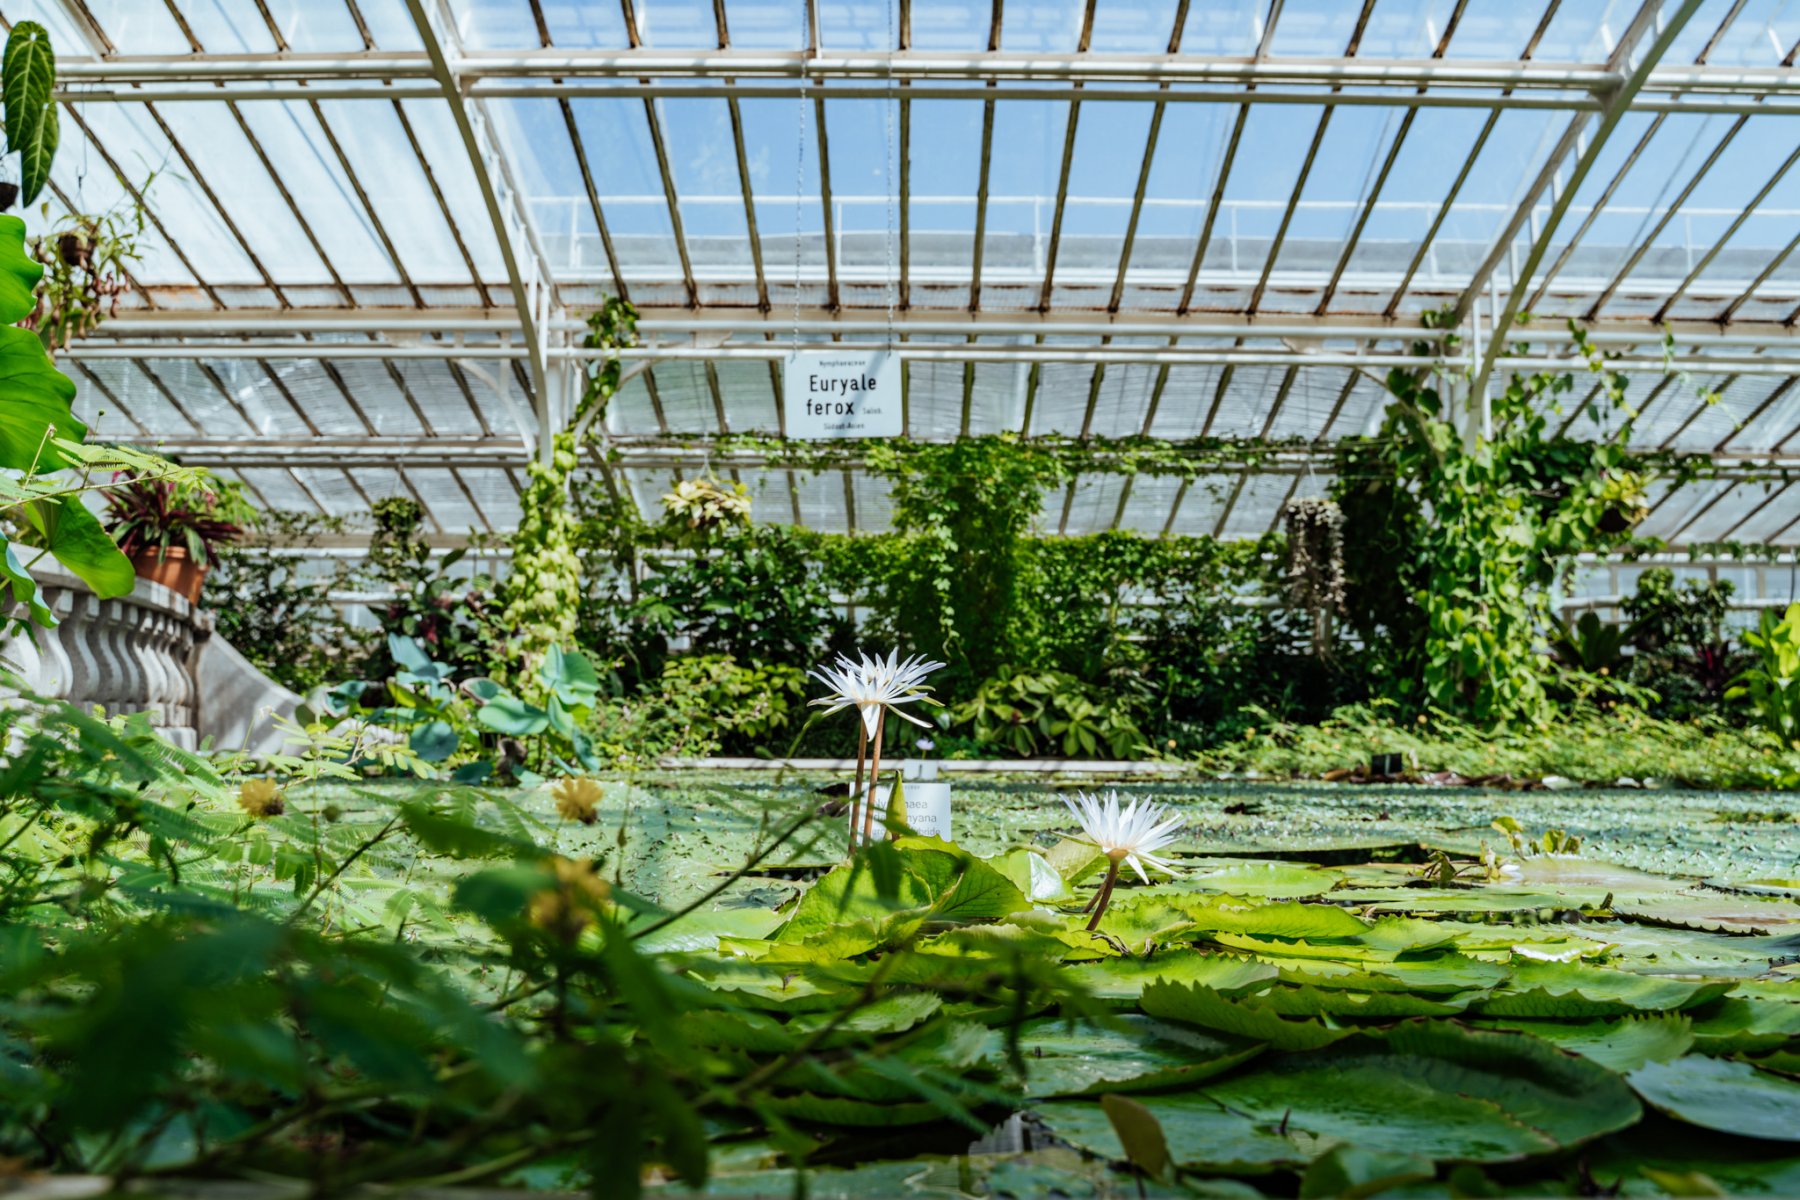 Geheimtipp Muenchen Botanischen Garten16 – ©wunderland media GmbH